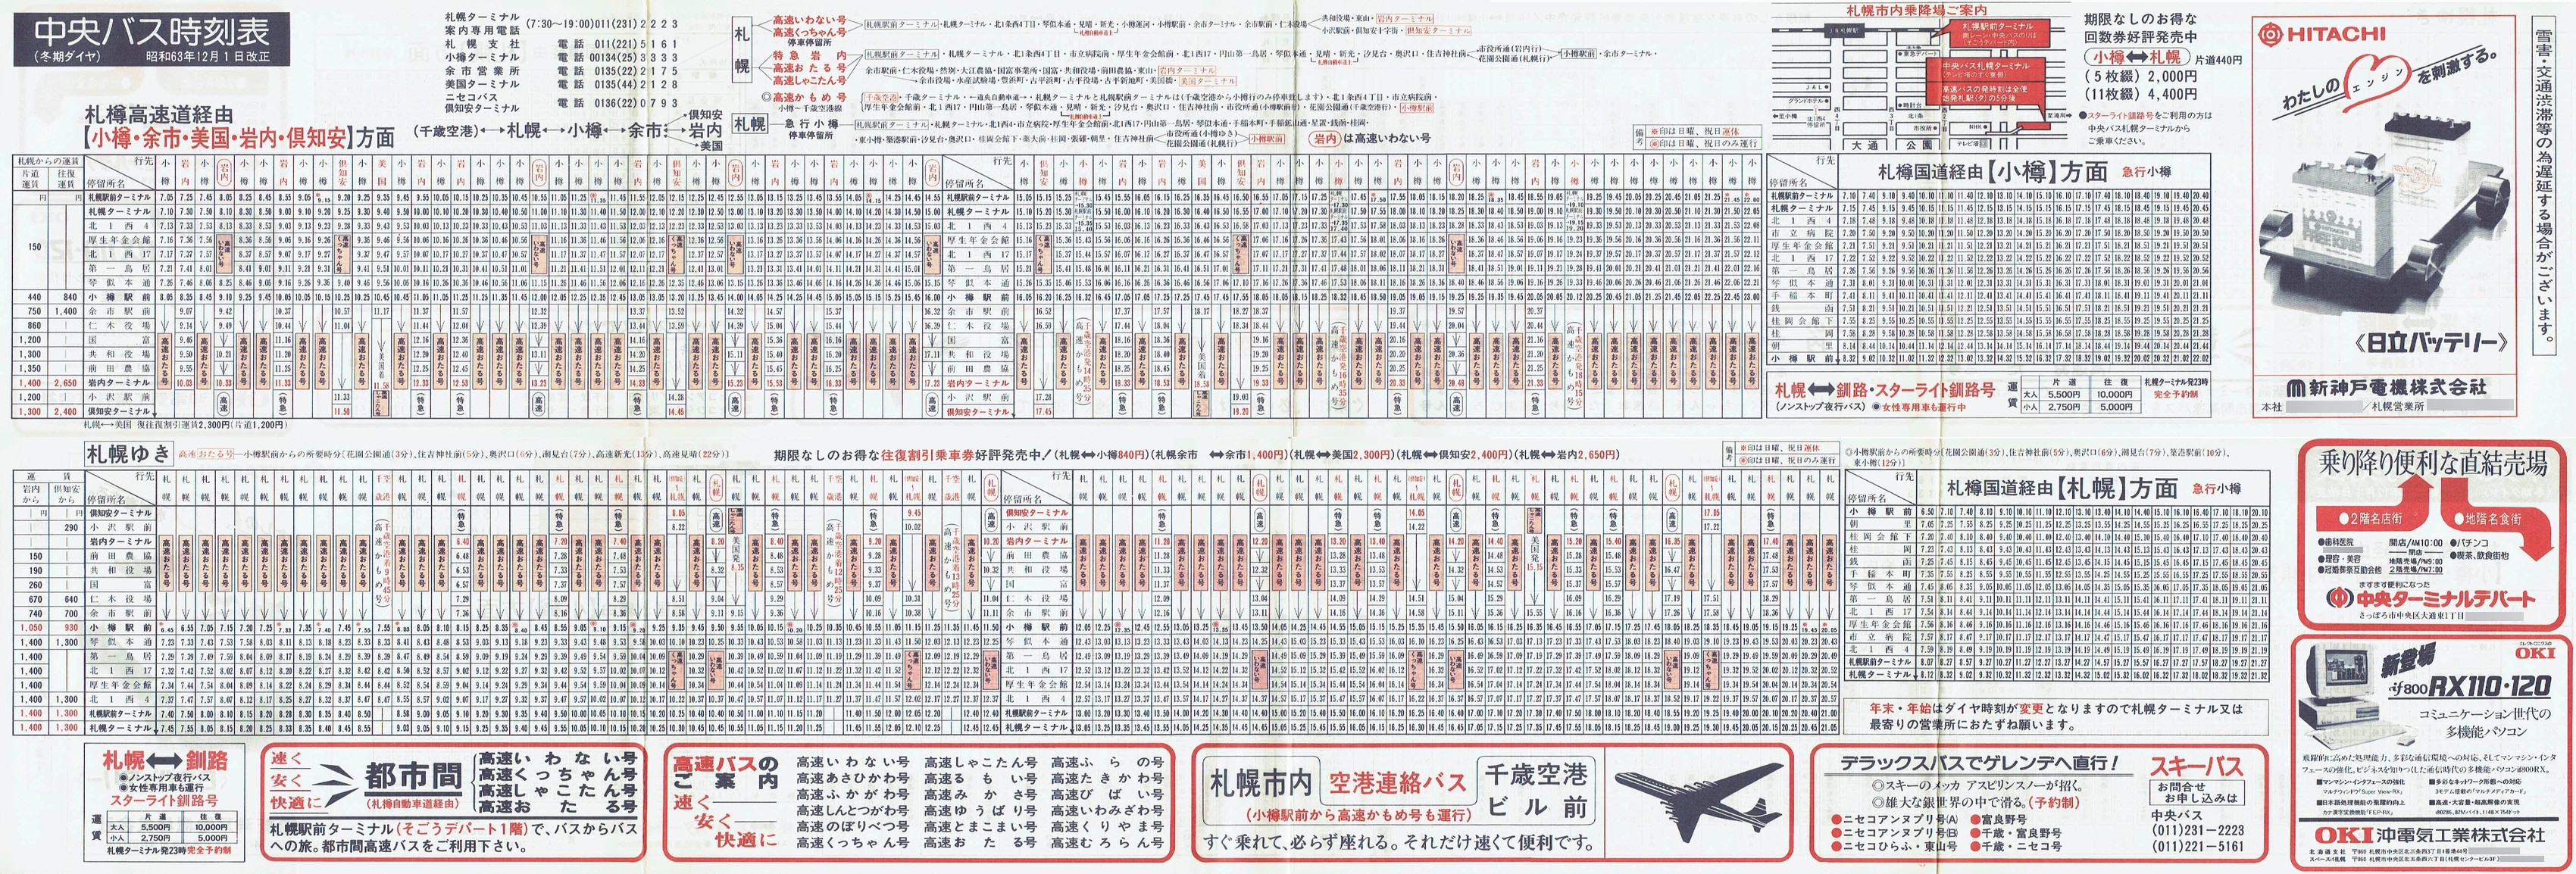 1988-12-01改正_北海道中央バス(札幌)_小樽・美国・岩内・倶知安方面時刻表